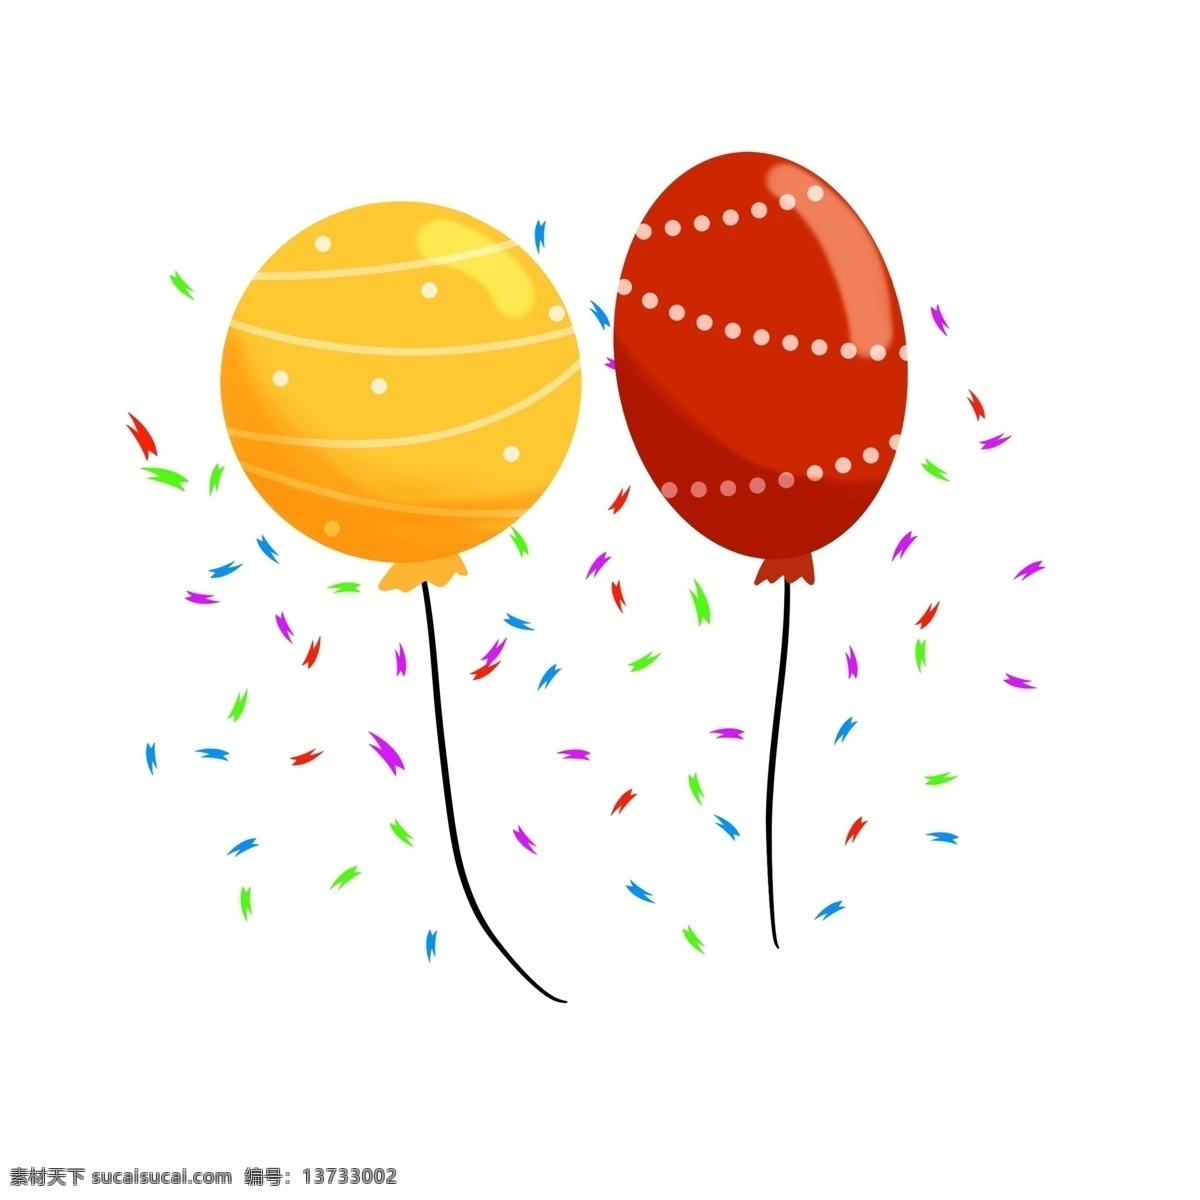 清新 庆祝 气球 装饰 元素 装饰元素 手绘 碎片 开心 玩耍 欢乐